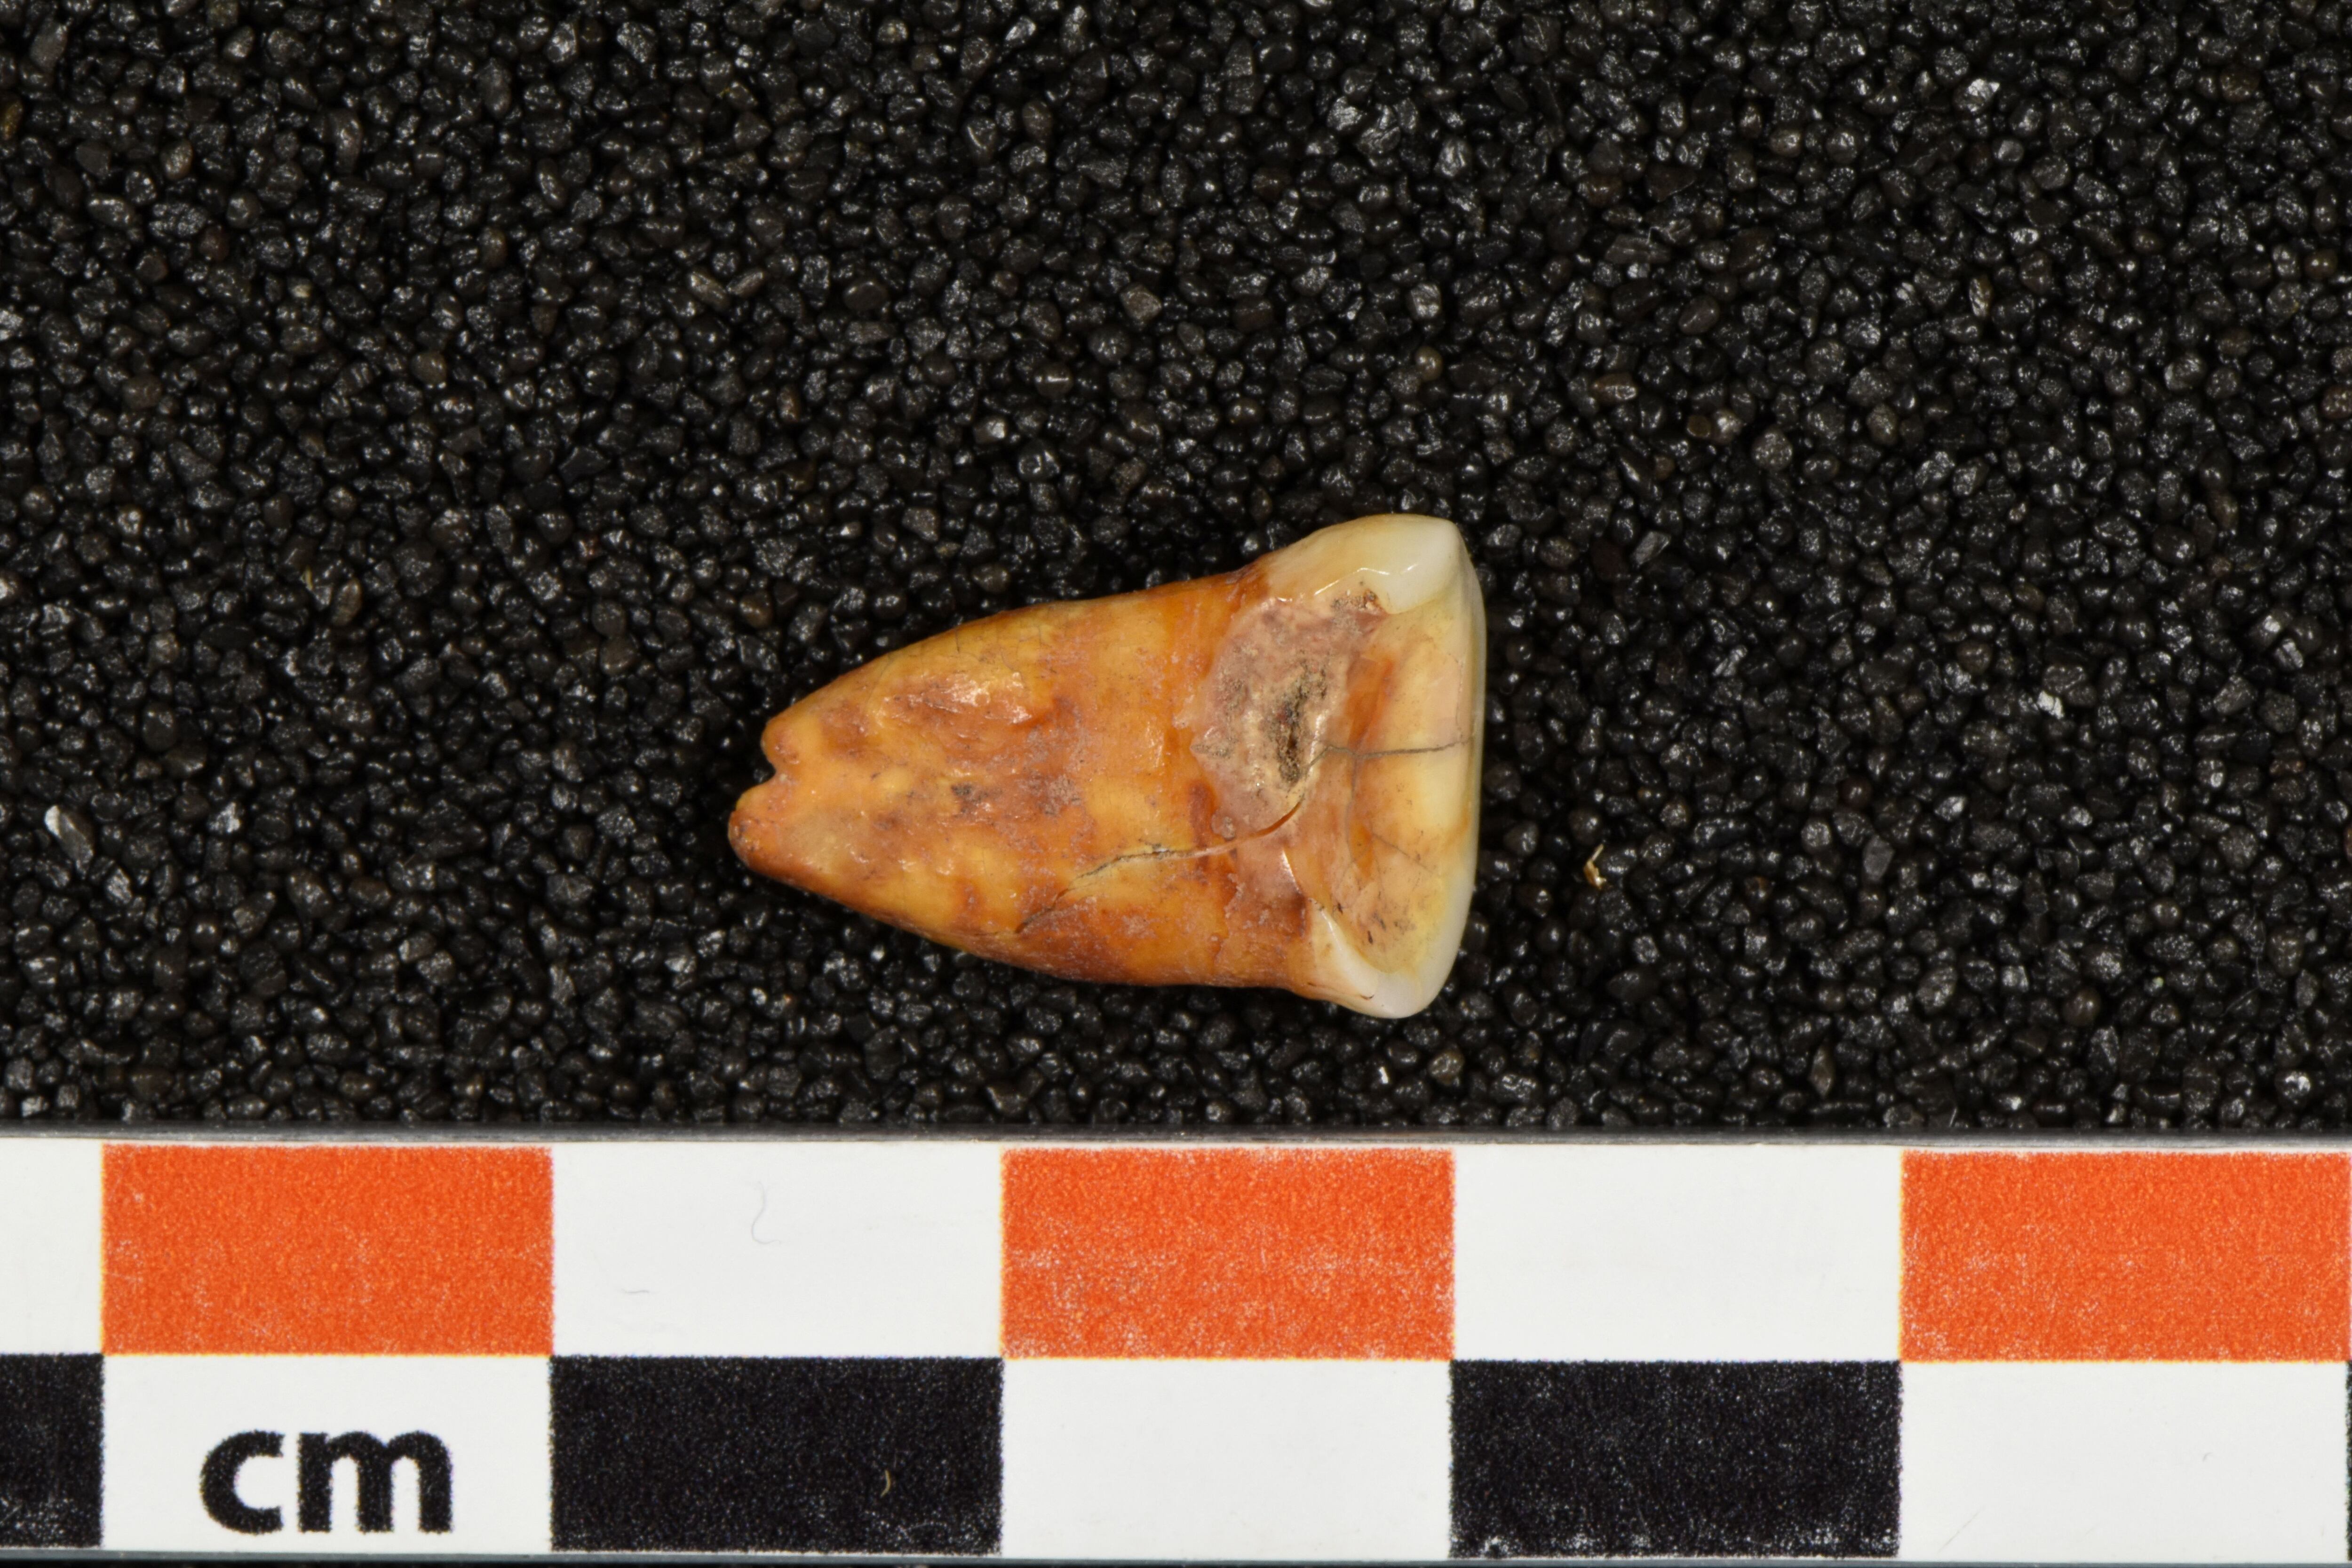 Un diente humano descubierto en la cueva de Taforalt, en Marruecos, en una fotografía sin fecha. Heiko Temming/Handout vía REUTERS